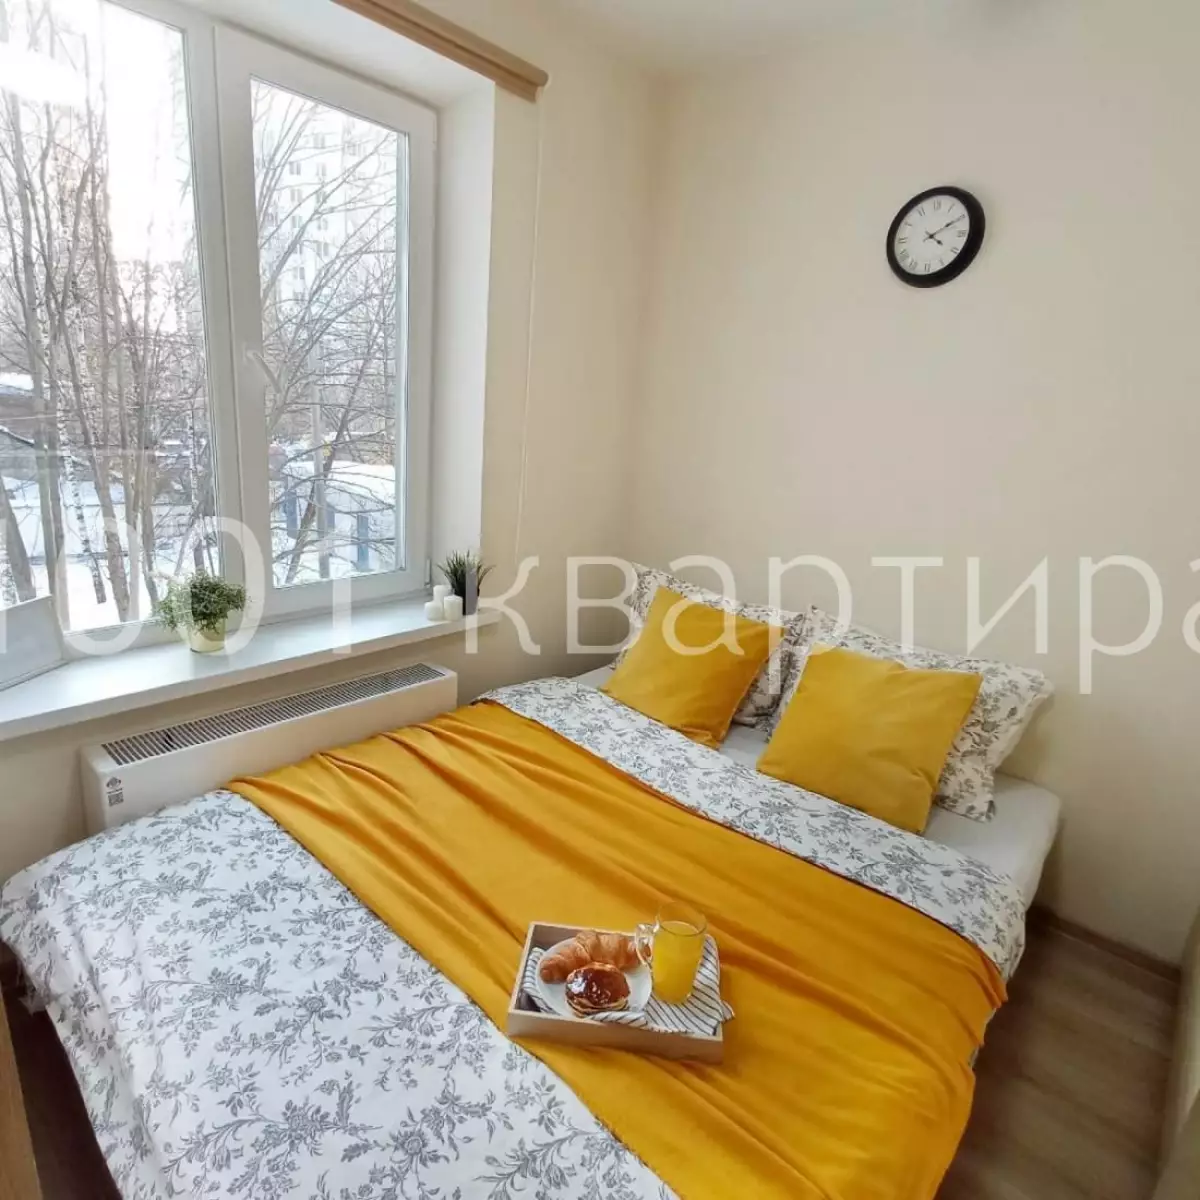 Вариант #134947 для аренды посуточно в Москве Дегунинская, д.1 к 3 на 2 гостей - фото 4